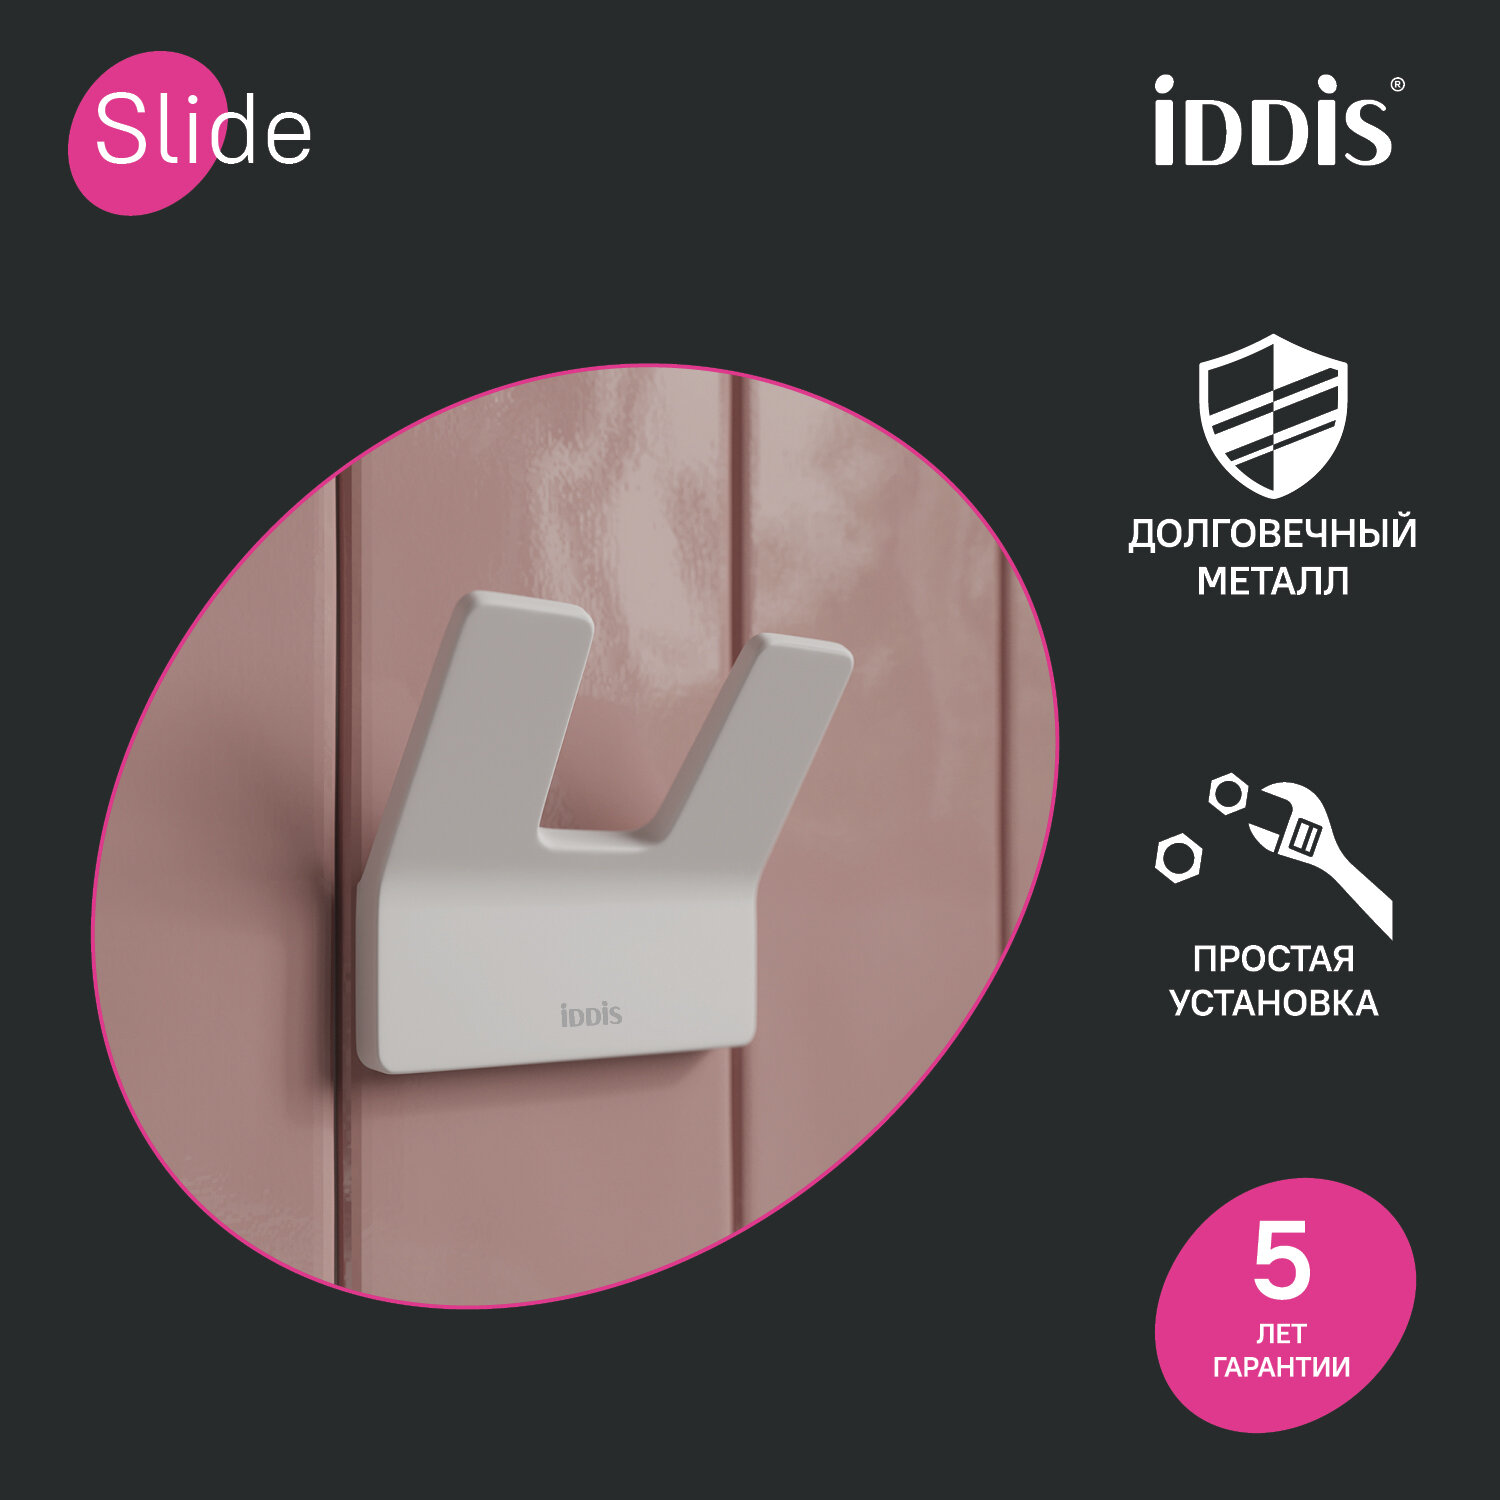 Крючок IDDIS Slide SLIWT20i41 белый двойной